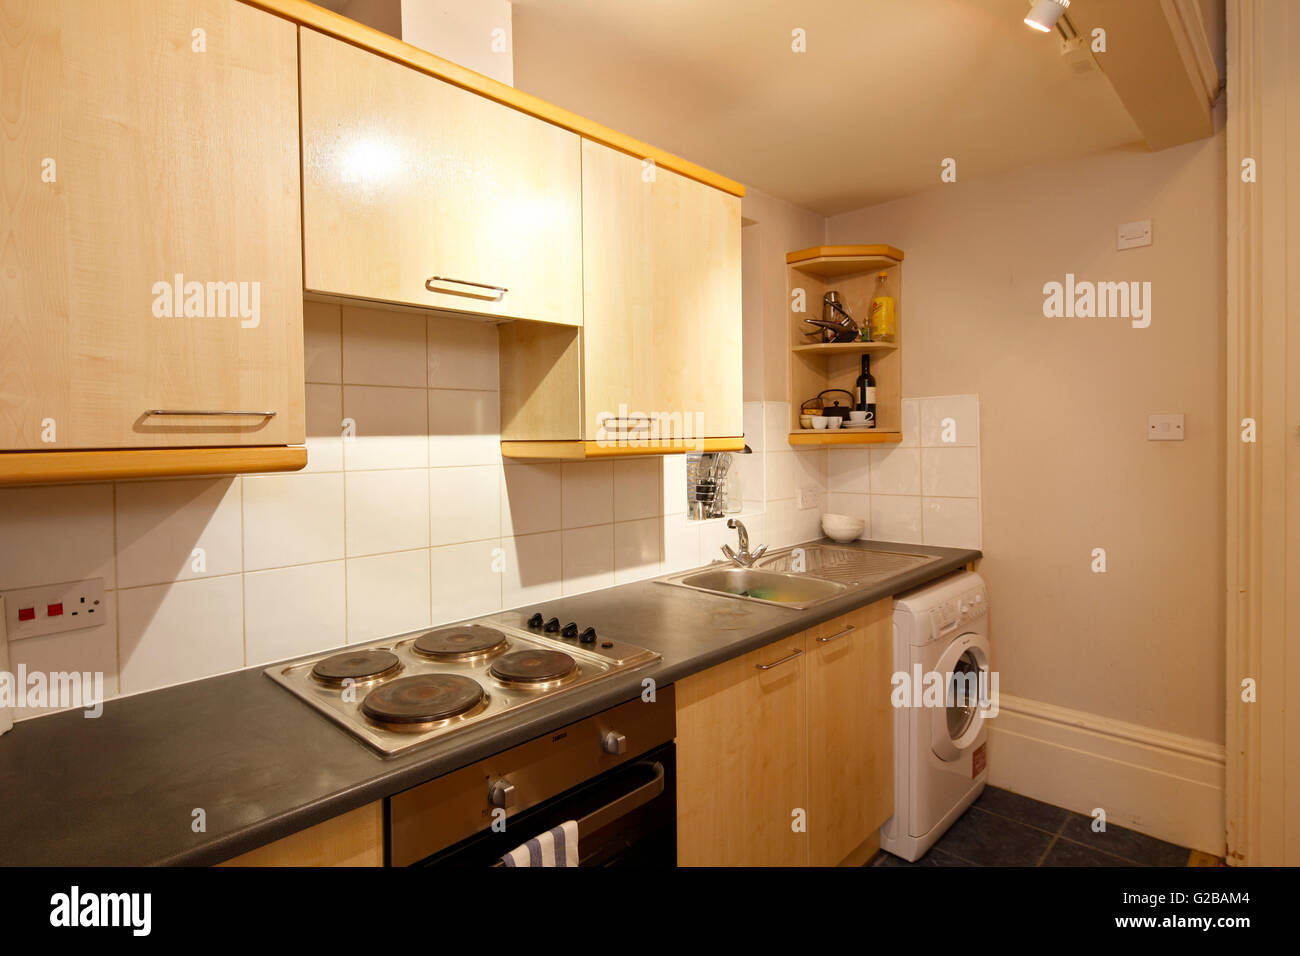 Pembridge Square, Notting Hill. Blick auf eine ältere, typische Küche. Holz Schränke und weiße Waschmaschine. Stockfoto